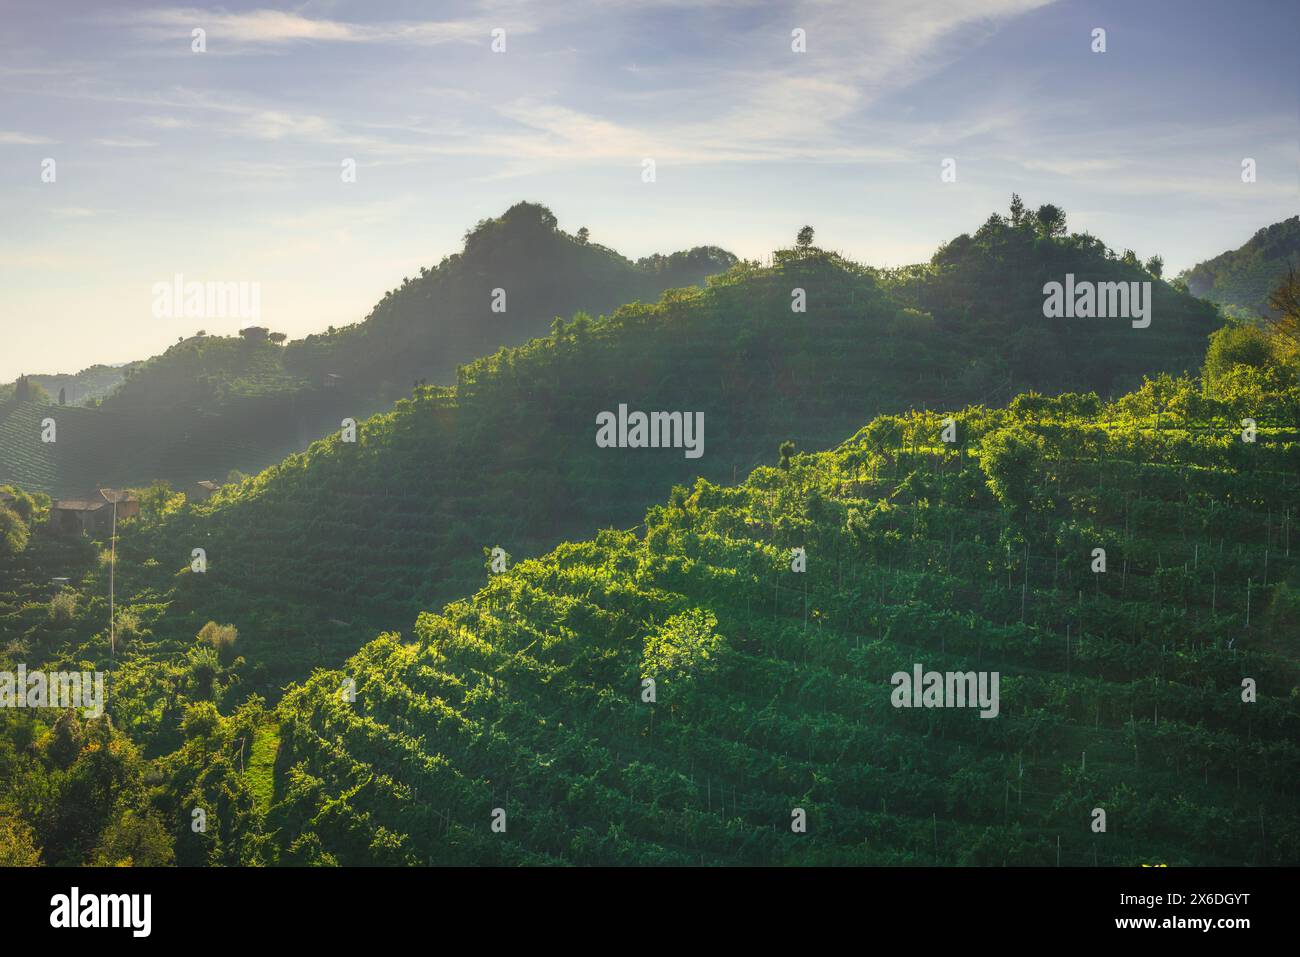 Vignobles des collines de Prosecco, site du patrimoine mondial de l'UNESCO. Valdobbiadene, région de Vénétie, Italie Banque D'Images